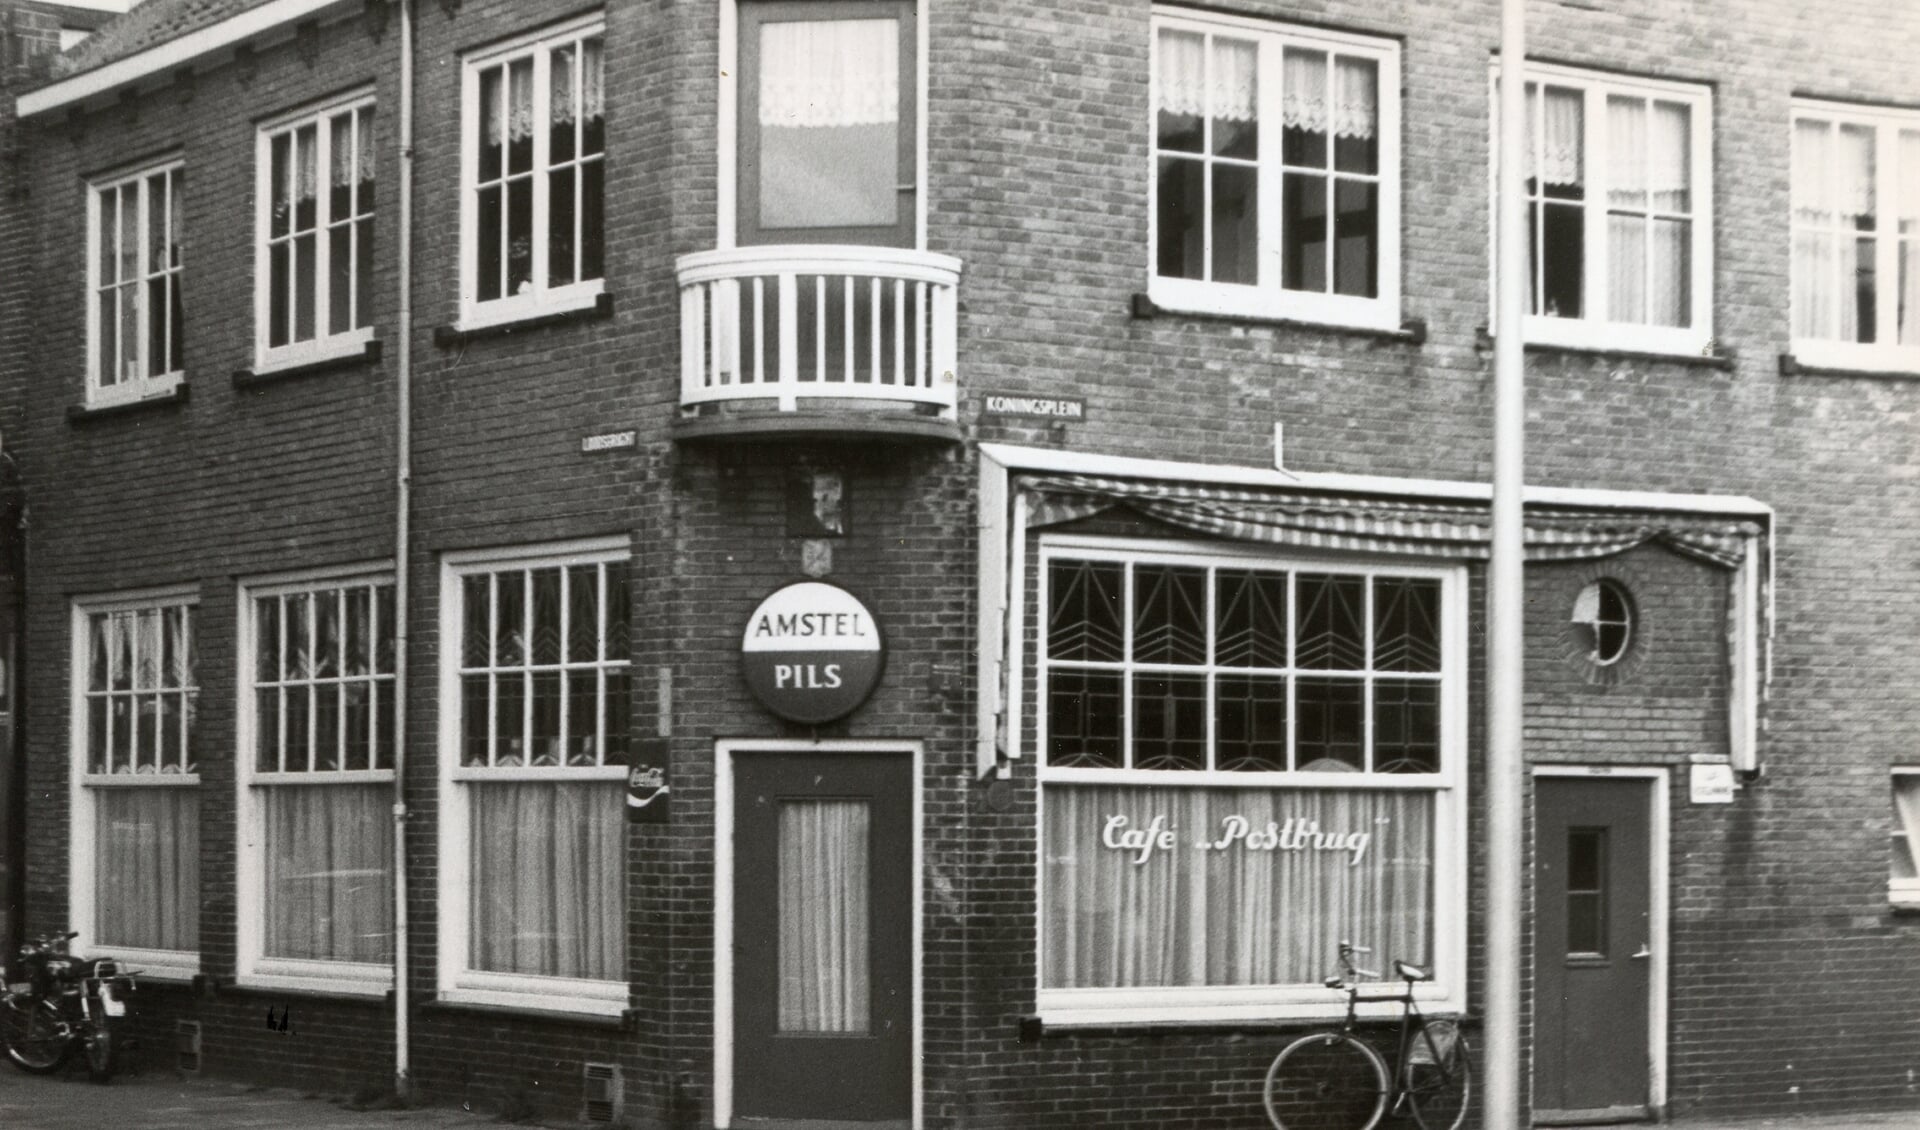 Café De Postbrug dat al sinds de bouw enkele verbouwingen had ondergaan.